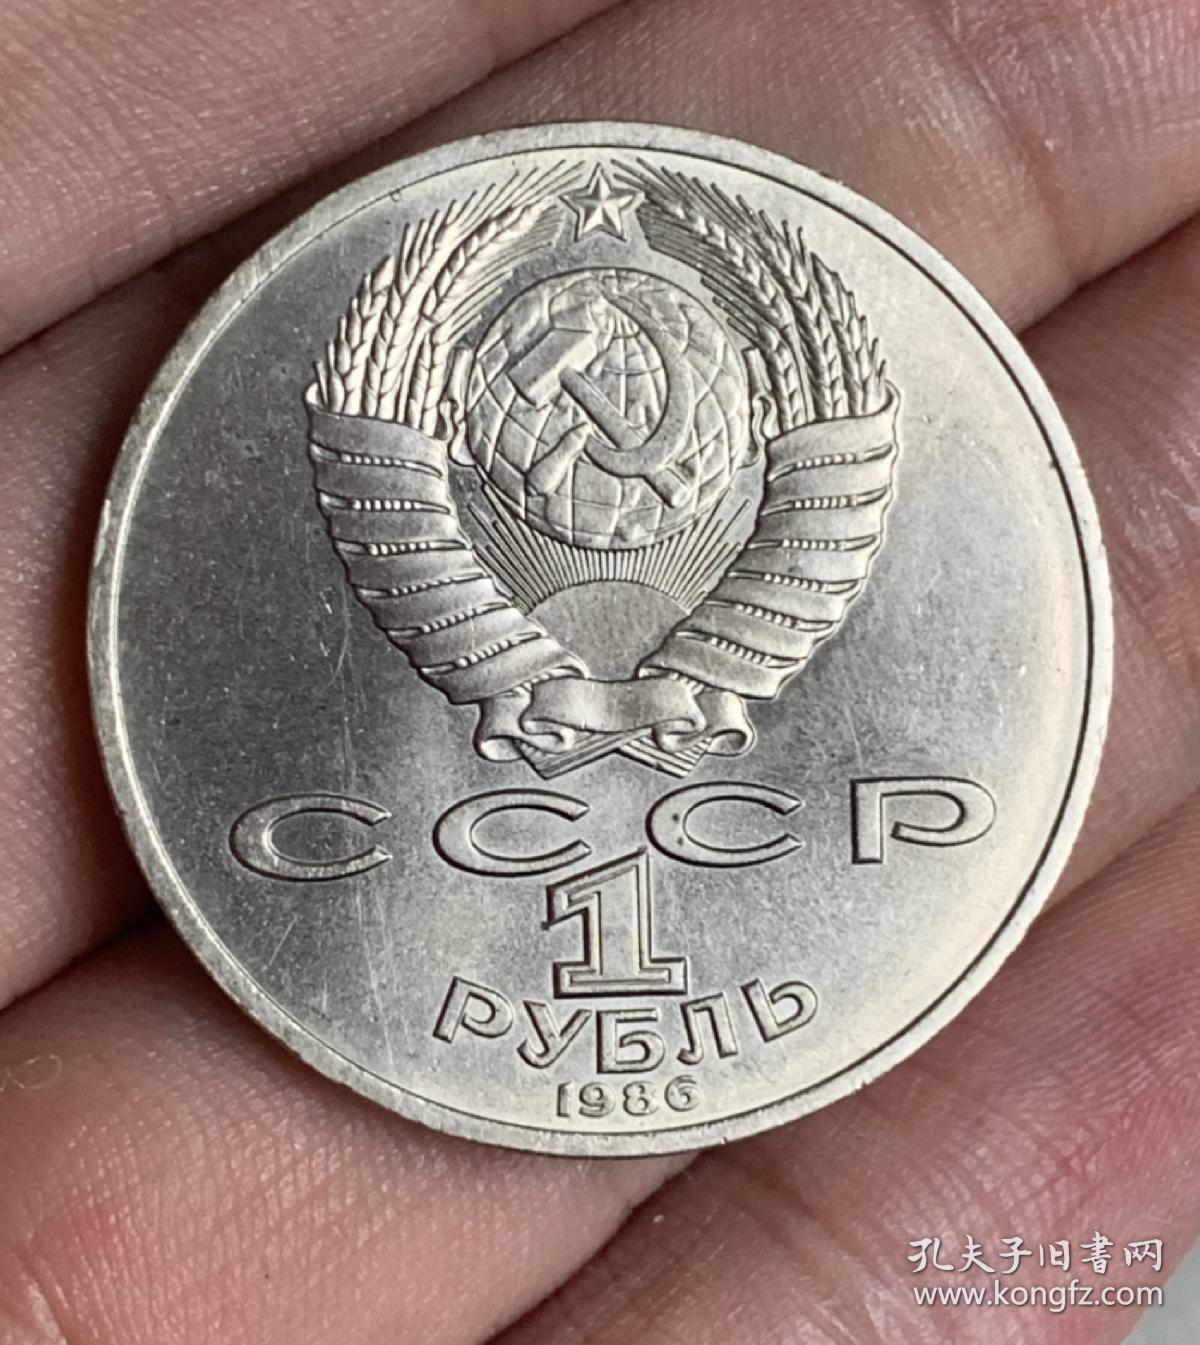 苏联1986年国际和平年1卢布纪念币 和平鸽 册 实物拍摄 一物一图 按图发货 所见所得